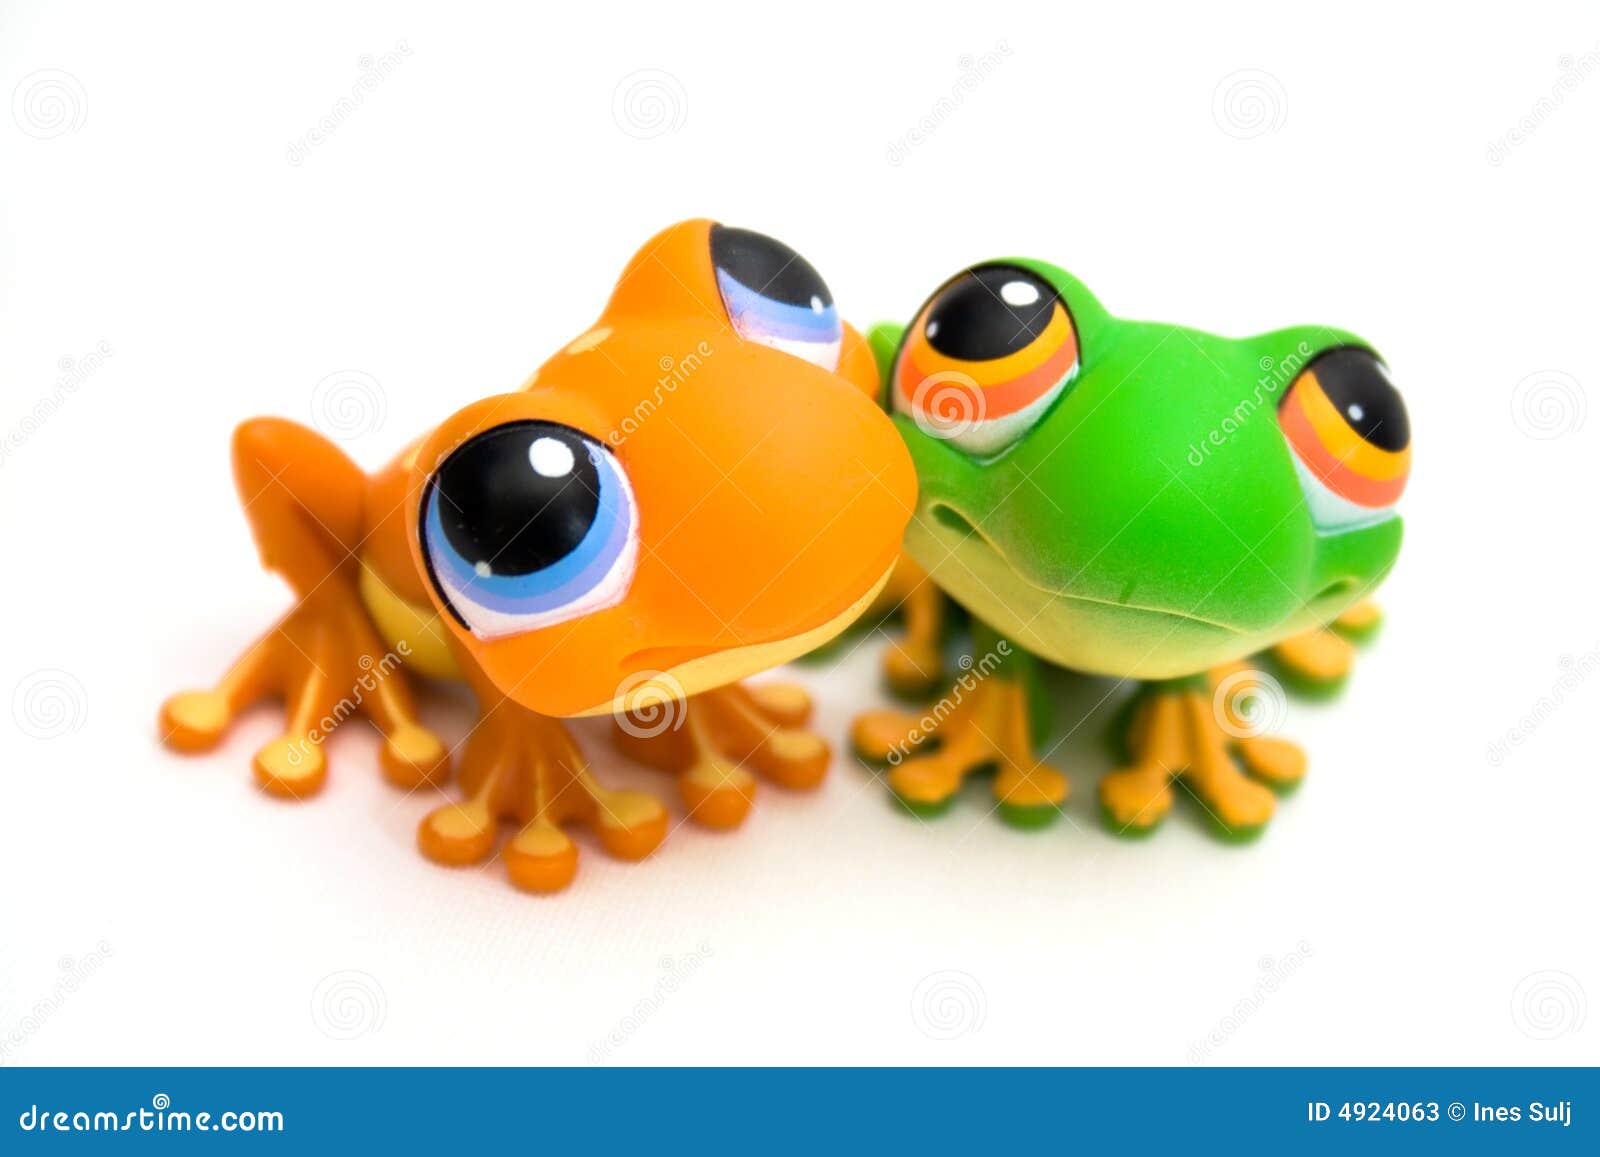 青蛙可膨胀的池玩具 库存照片. 图片 包括有 生活, 航空, 玩具, 作用, 内在, 特征, 形状, 浮动, 夏天 - 868798